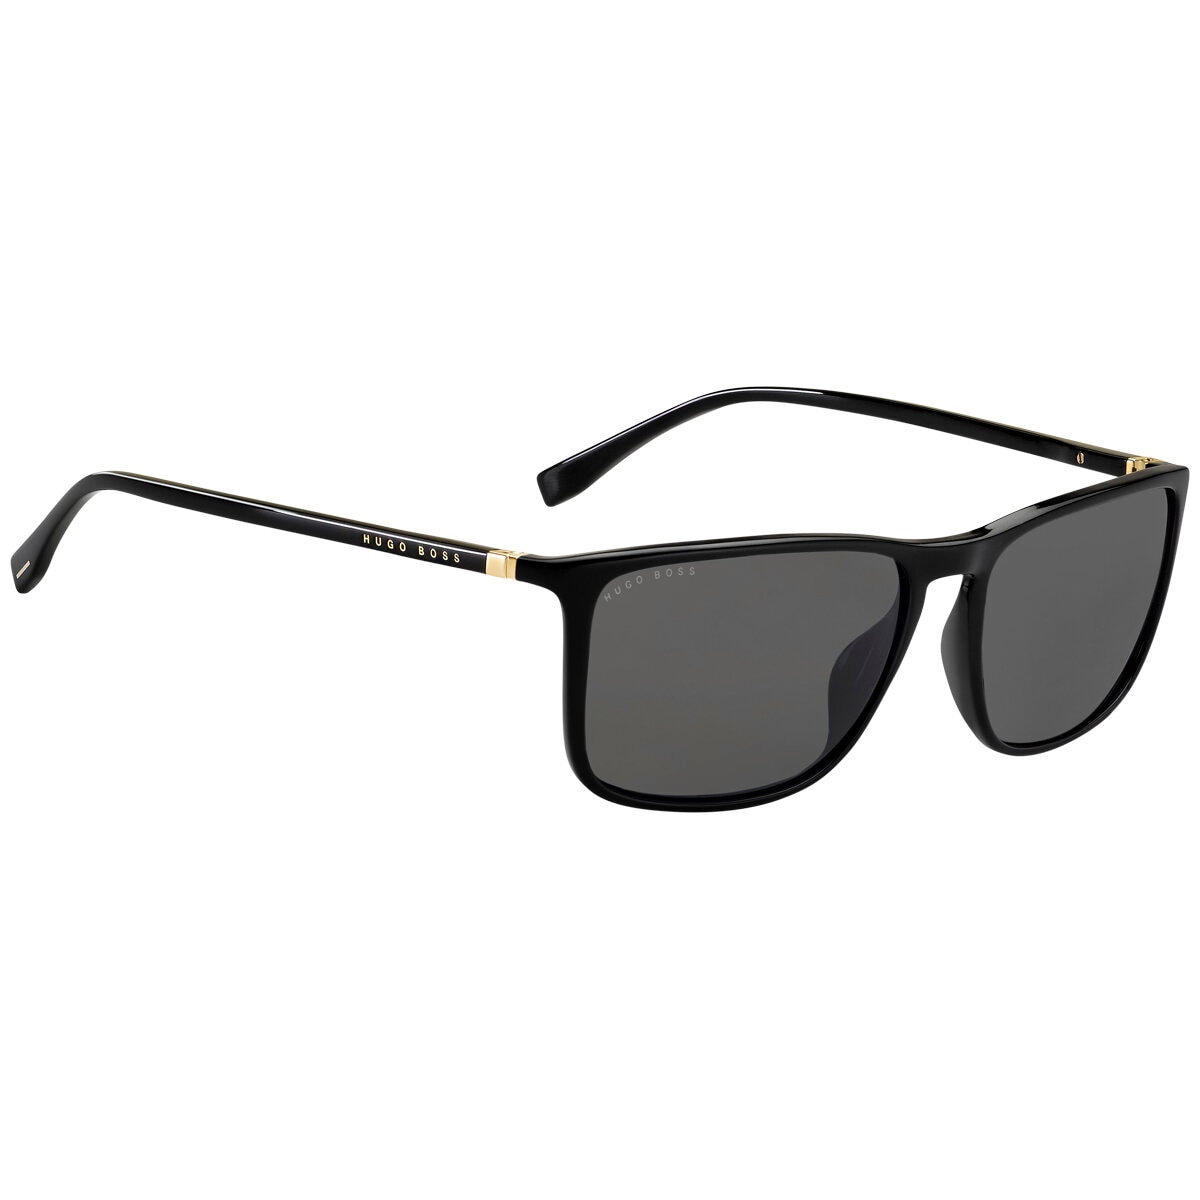 Hugo Boss 0665NS Men’s Sunglasses